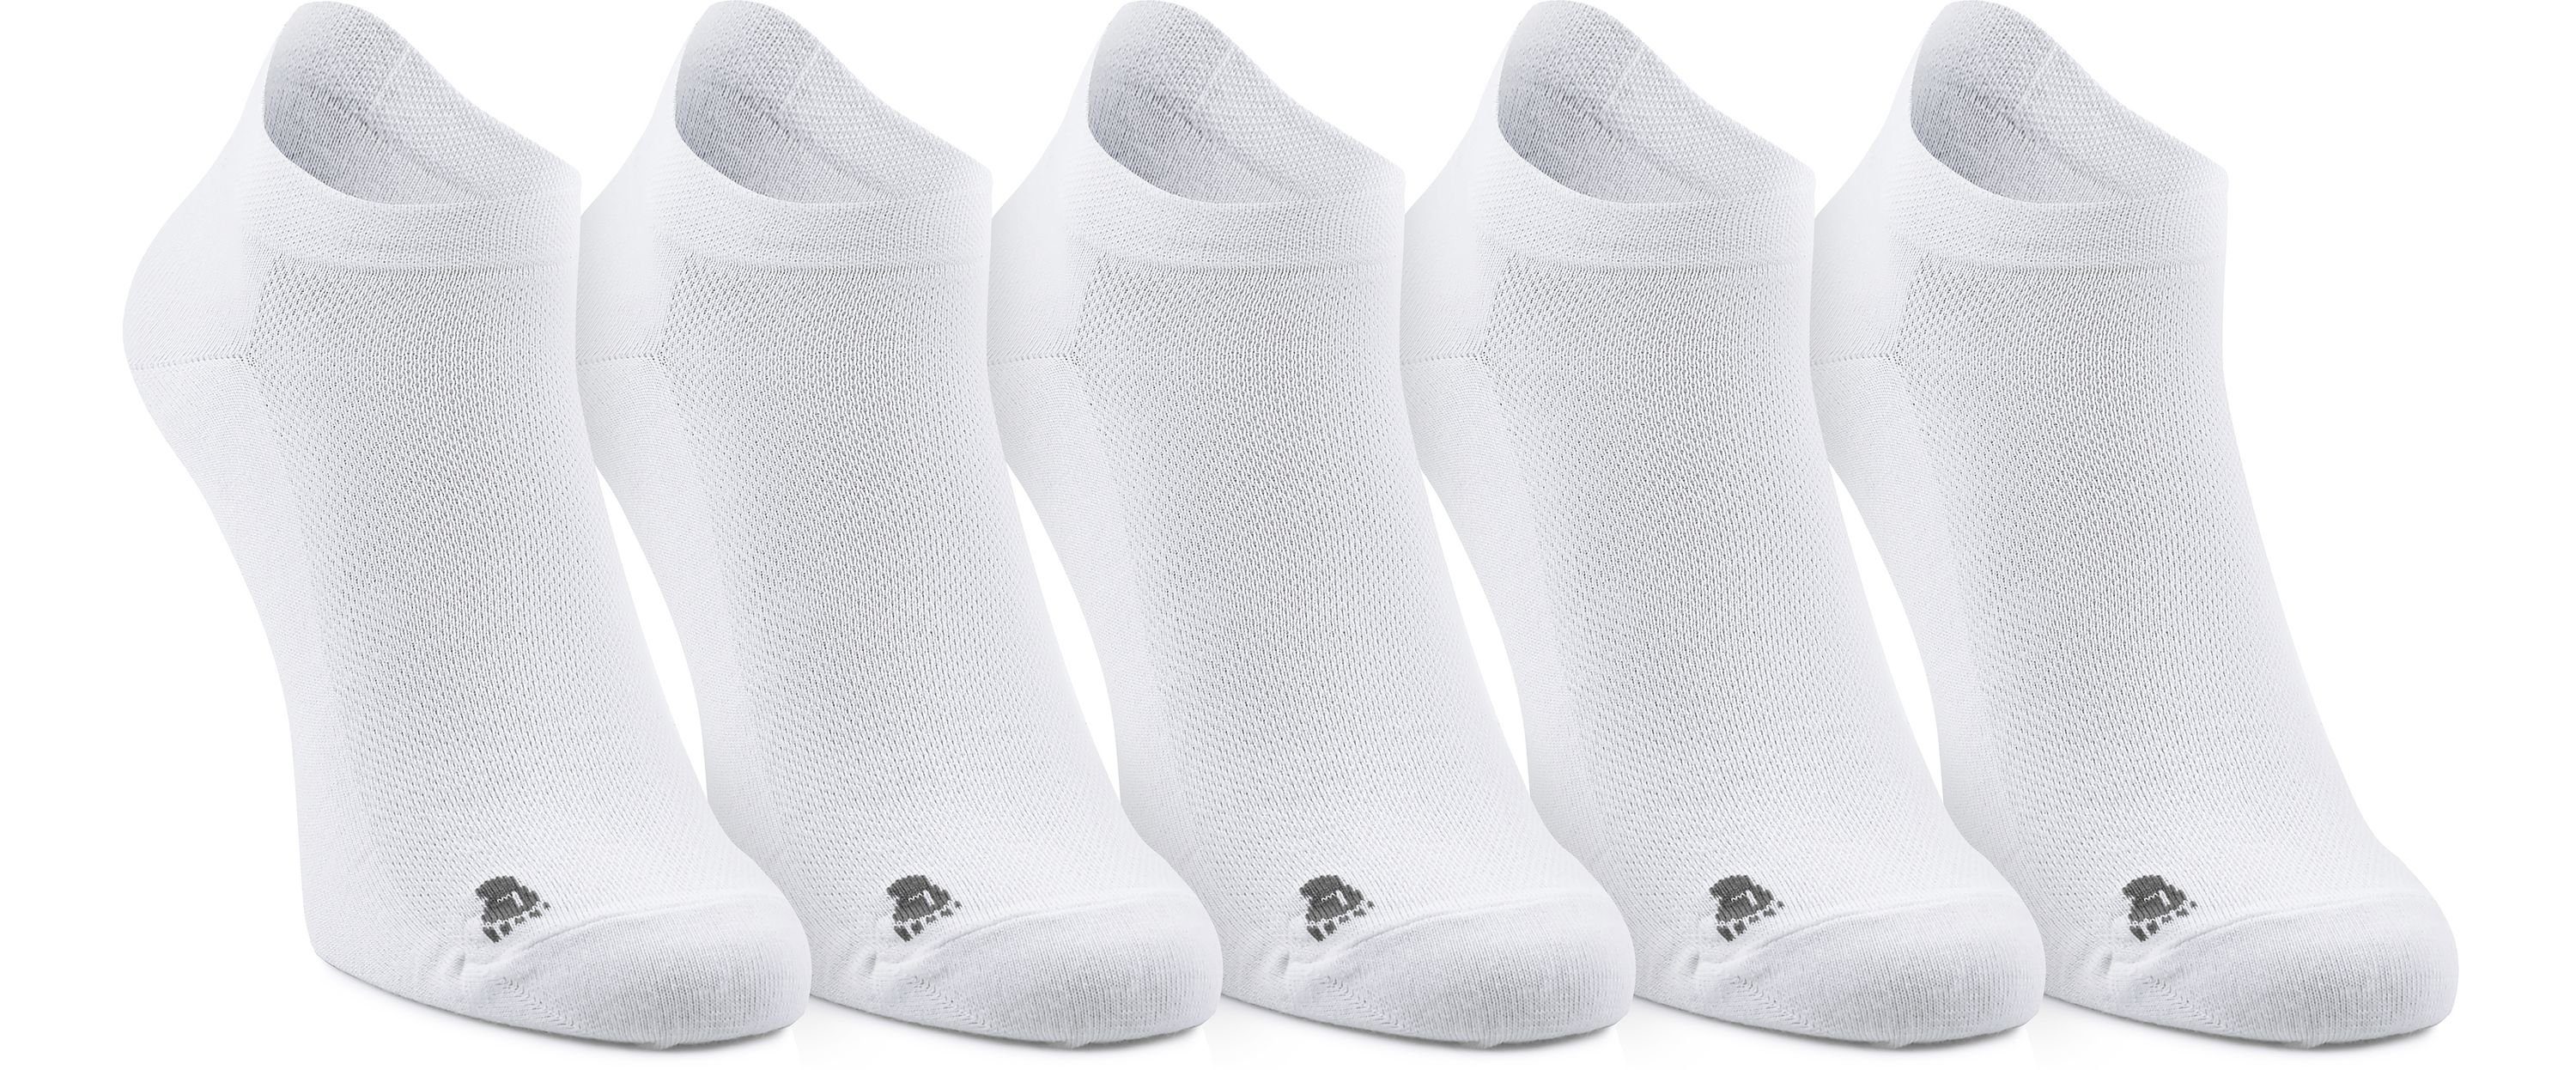 Ladeheid Socken Unisex 5 Pack Sneaker Socken LASS0001 Weiß